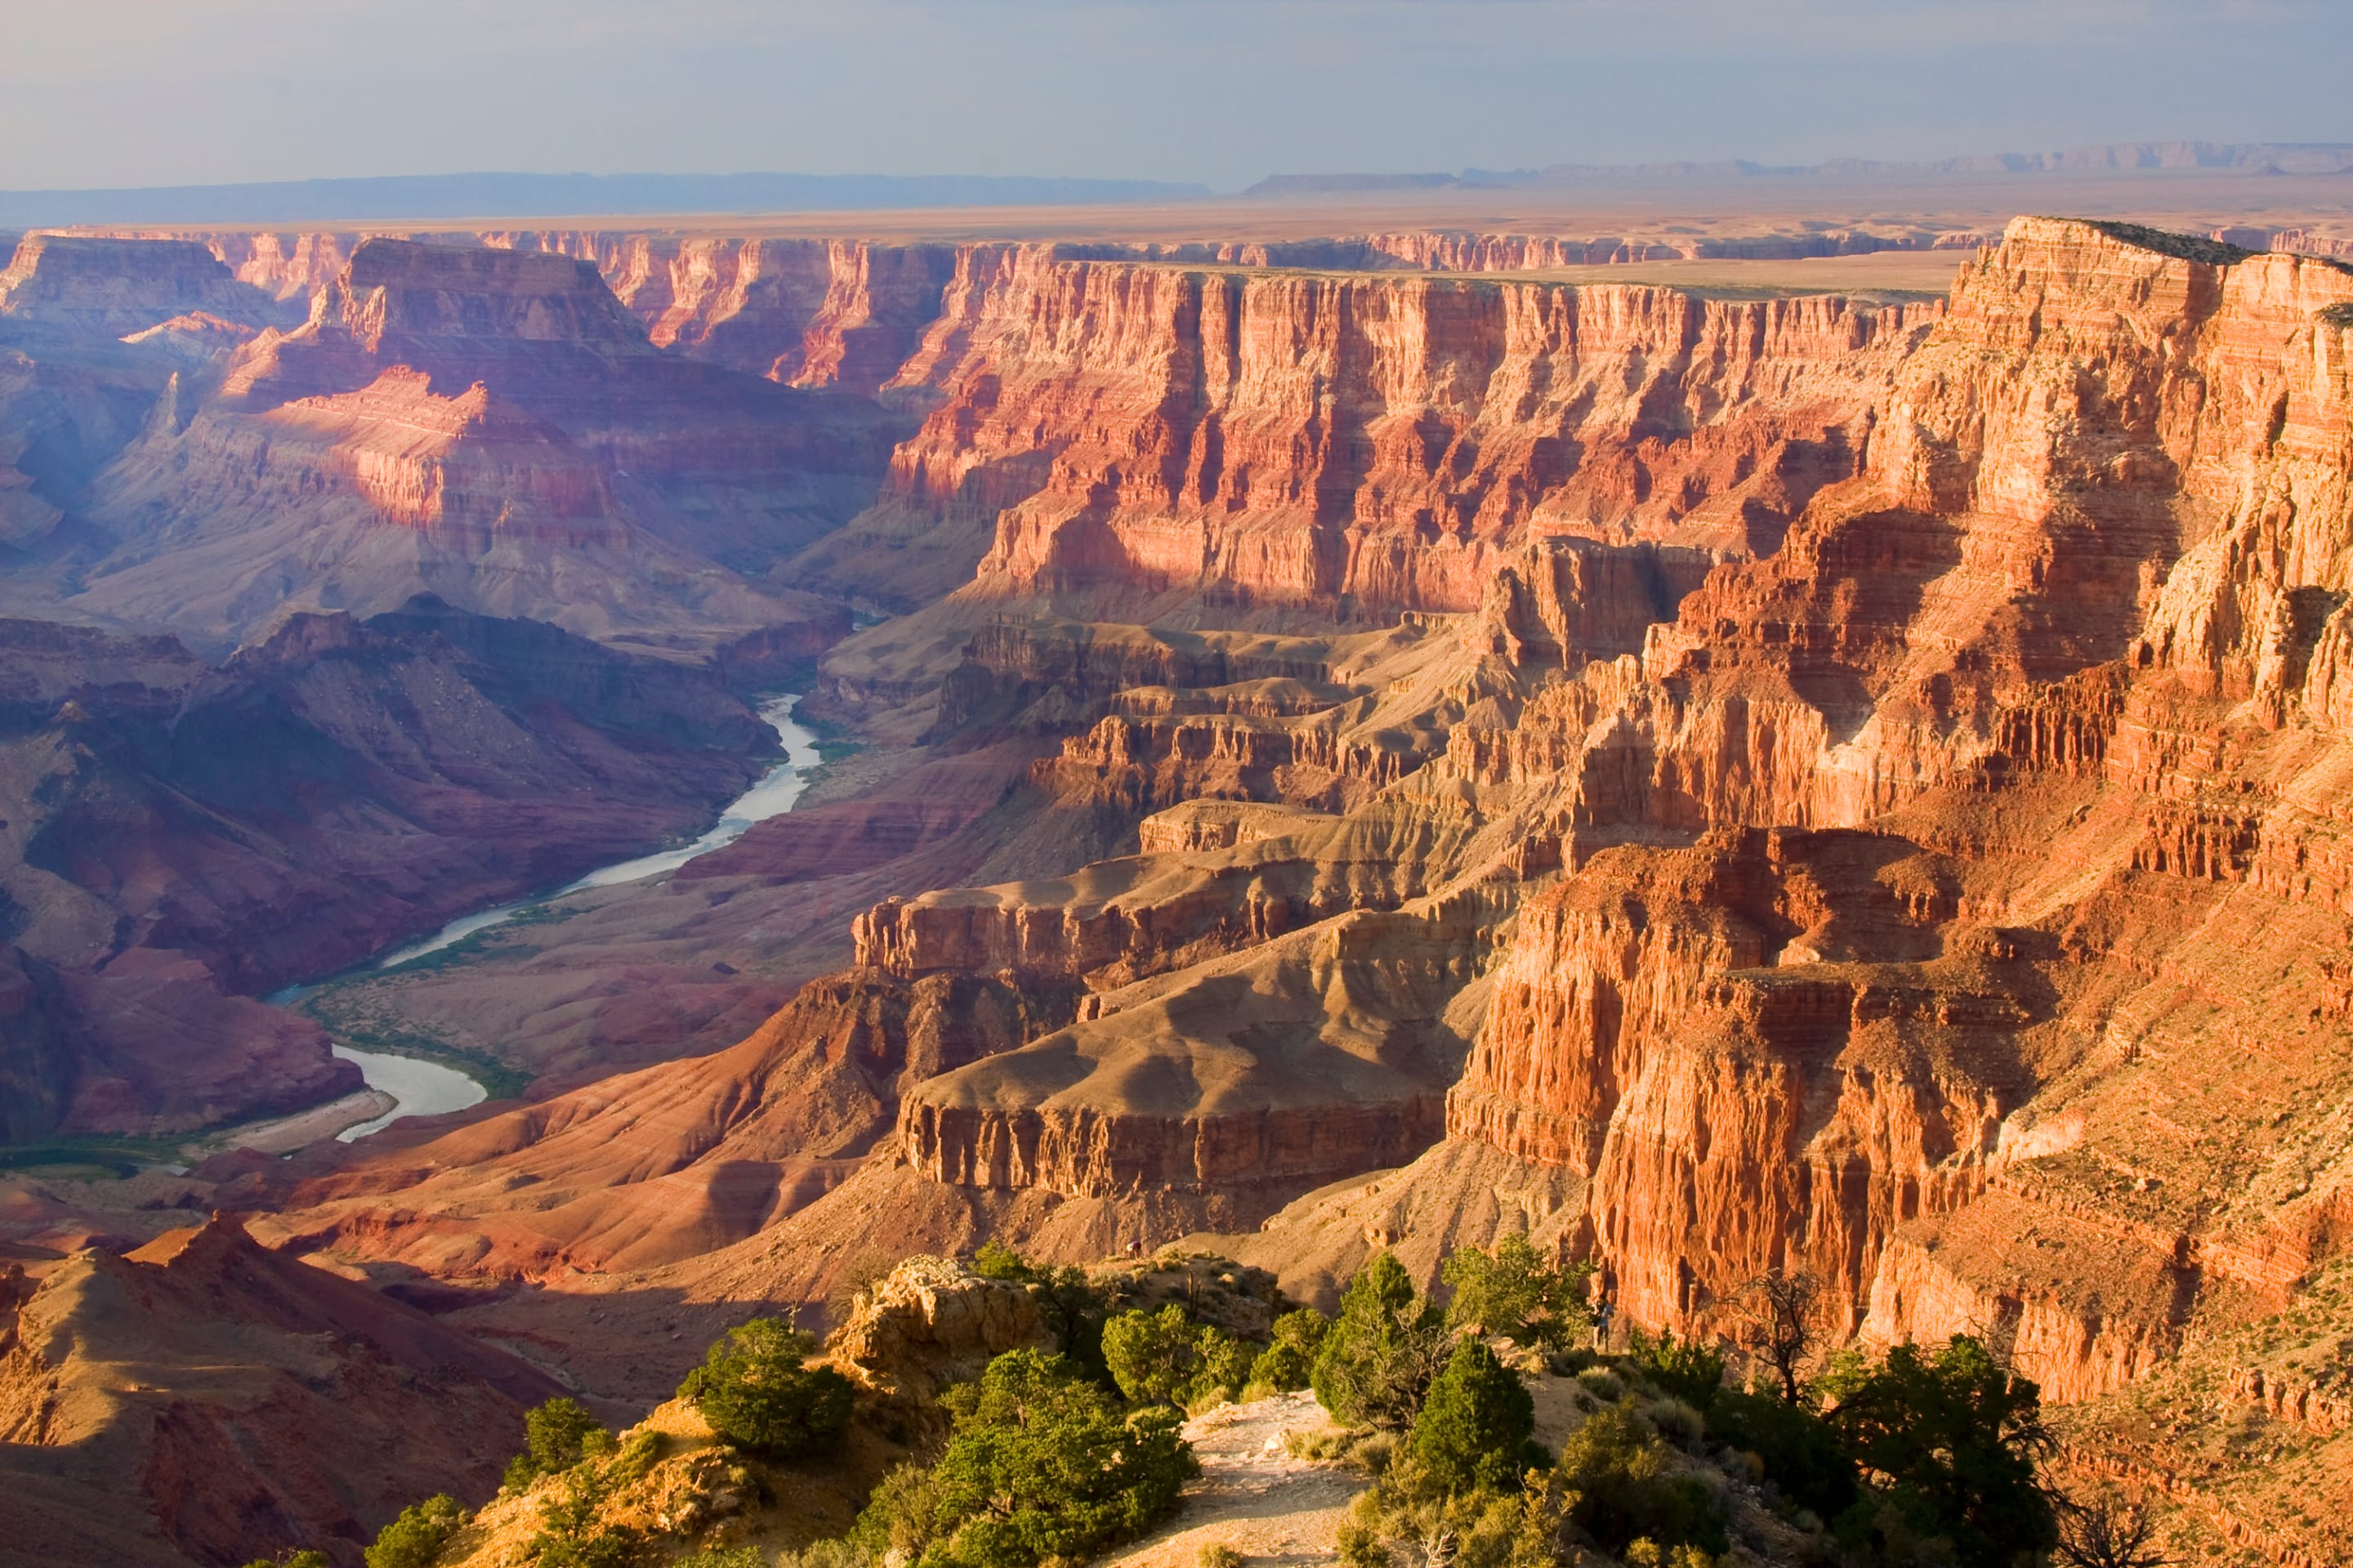 Самый западный город северной америки. Национальный парк Гранд-каньон, Аризона. Каньон реки Колорадо Северная Америка. Grand-Canyon - Гранд-каньон (большой каньон). Национальный парк Гранд каньон в Северной Америке.